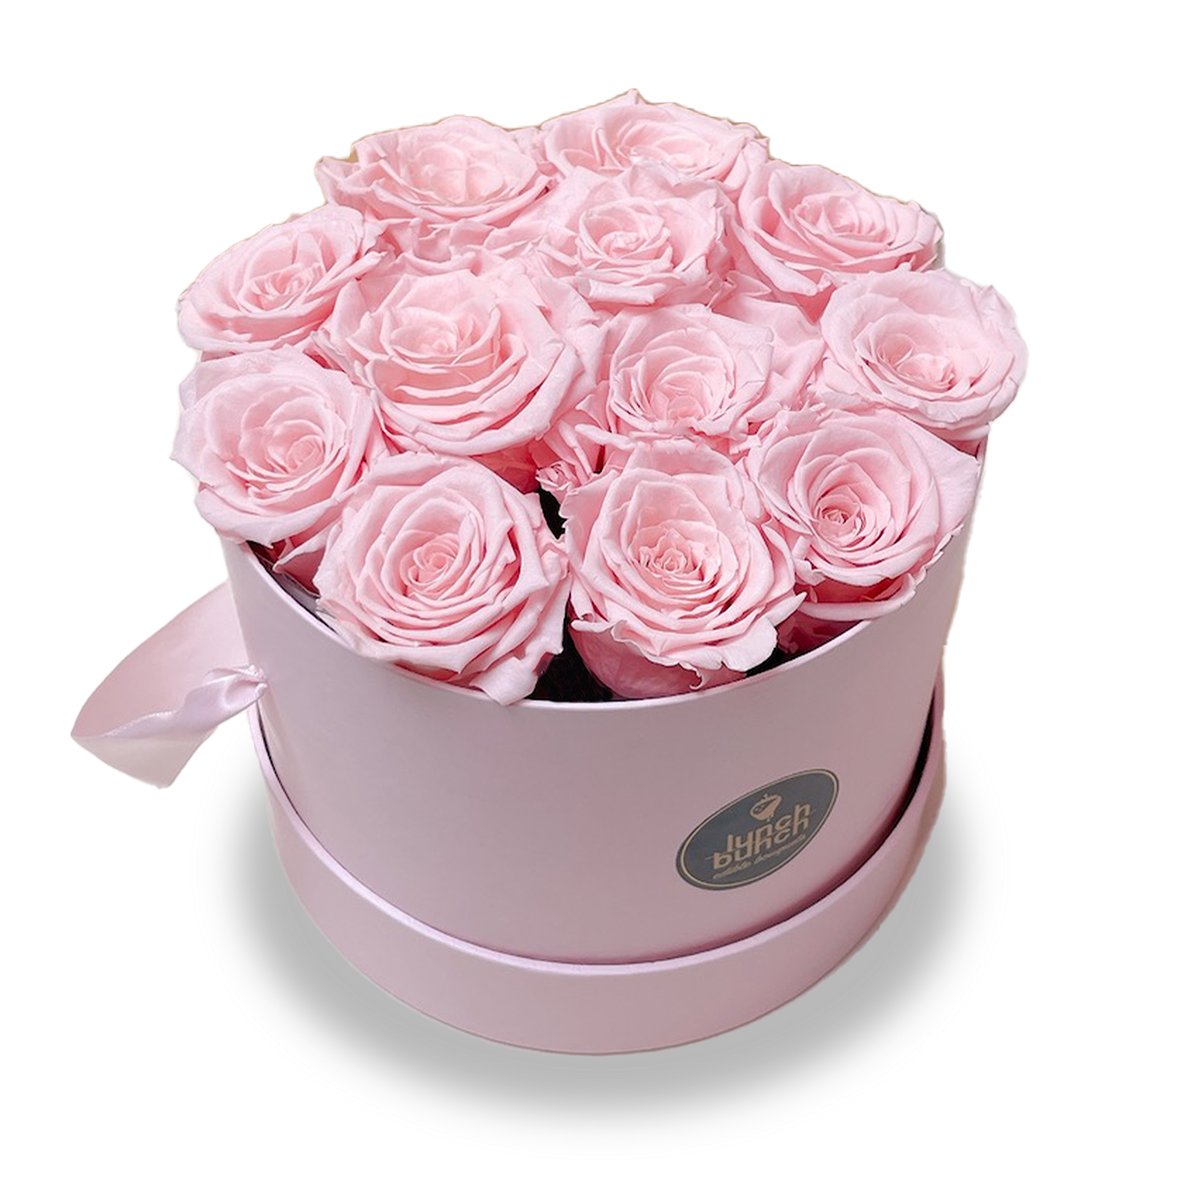 preserved roses box, preserved roses, preserved rose petals, eternal rose urn, infinity rose, everlasting marriage, eternity roses